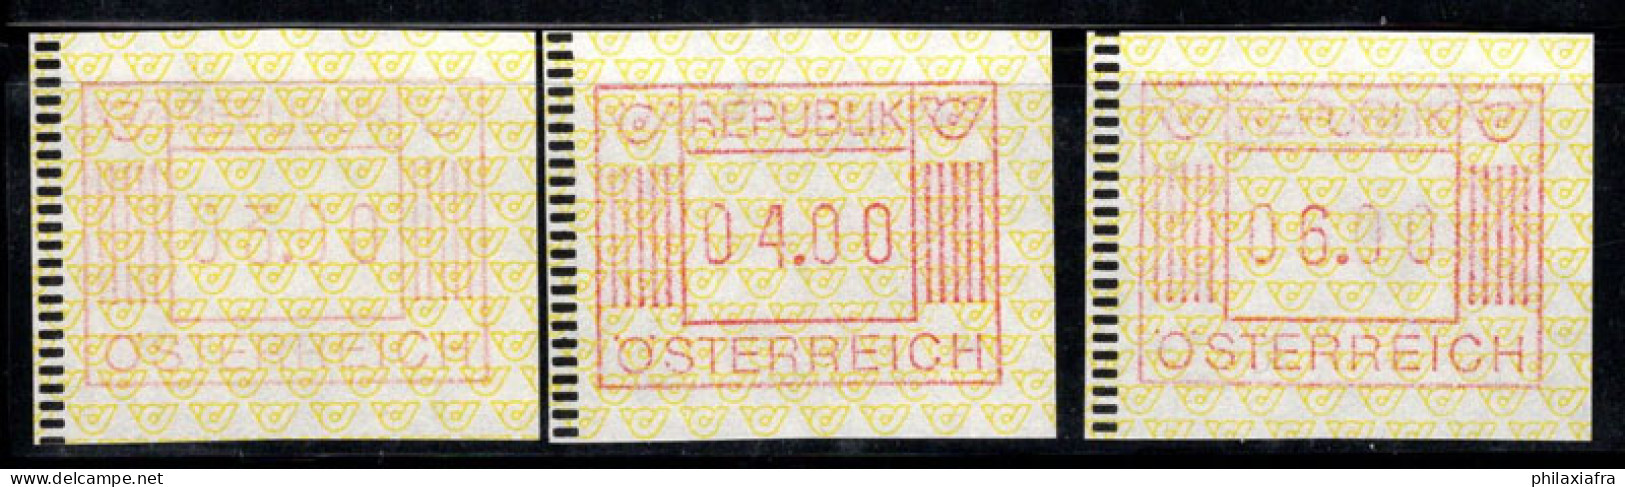 Autriche 1983 Mi. 1 Neuf ** 100% ATM 03.00, 04.00 - Machines à Affranchir (EMA)